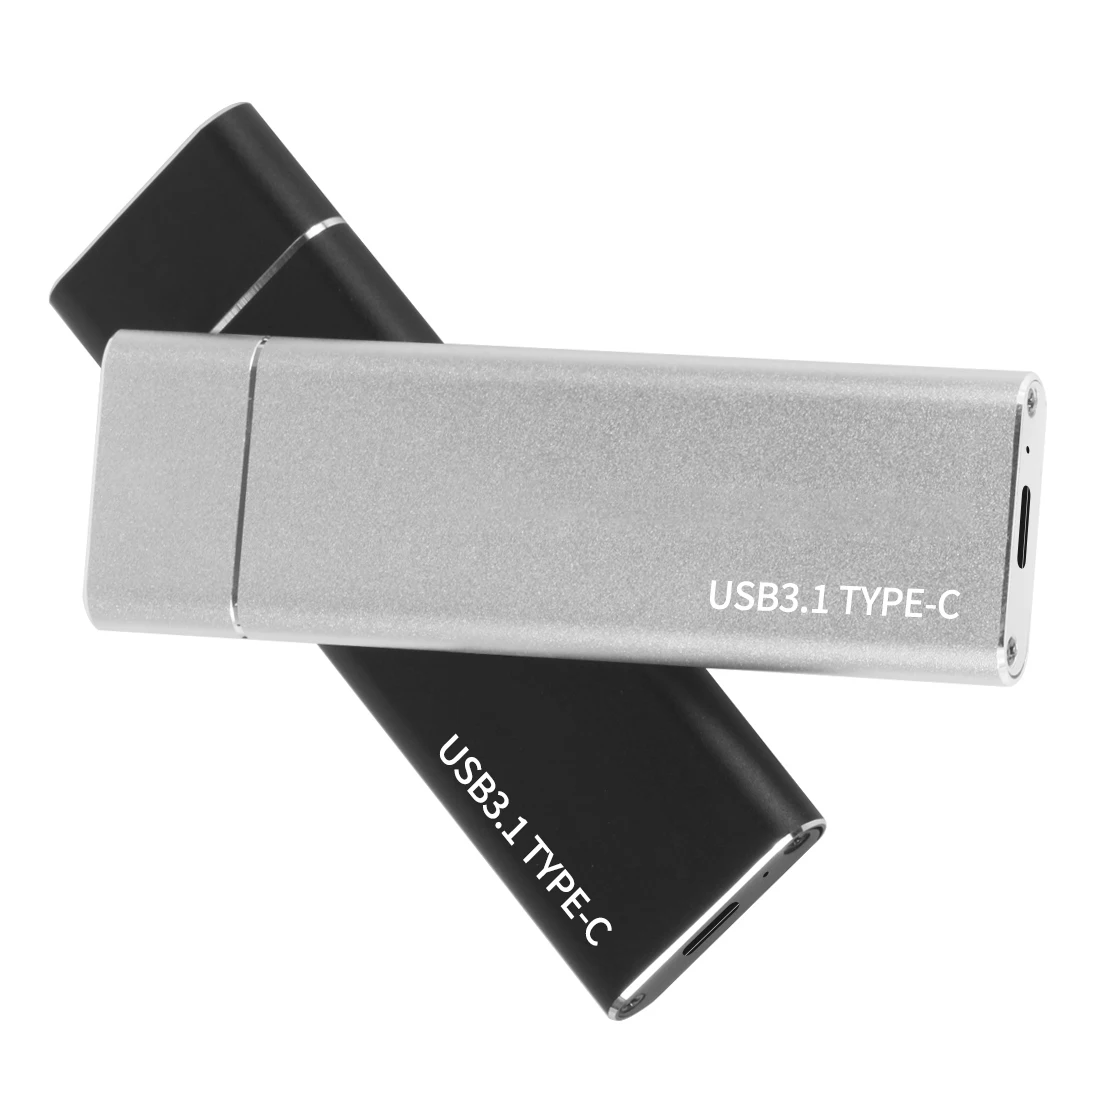 USB 3,1 для M.2 NVME PCIe корпус SSD, NVME M-Key для адаптера типа C чехол для nvme SSD, USB3.1 для M.2 NGFF SATA SSD Чехол Коробка